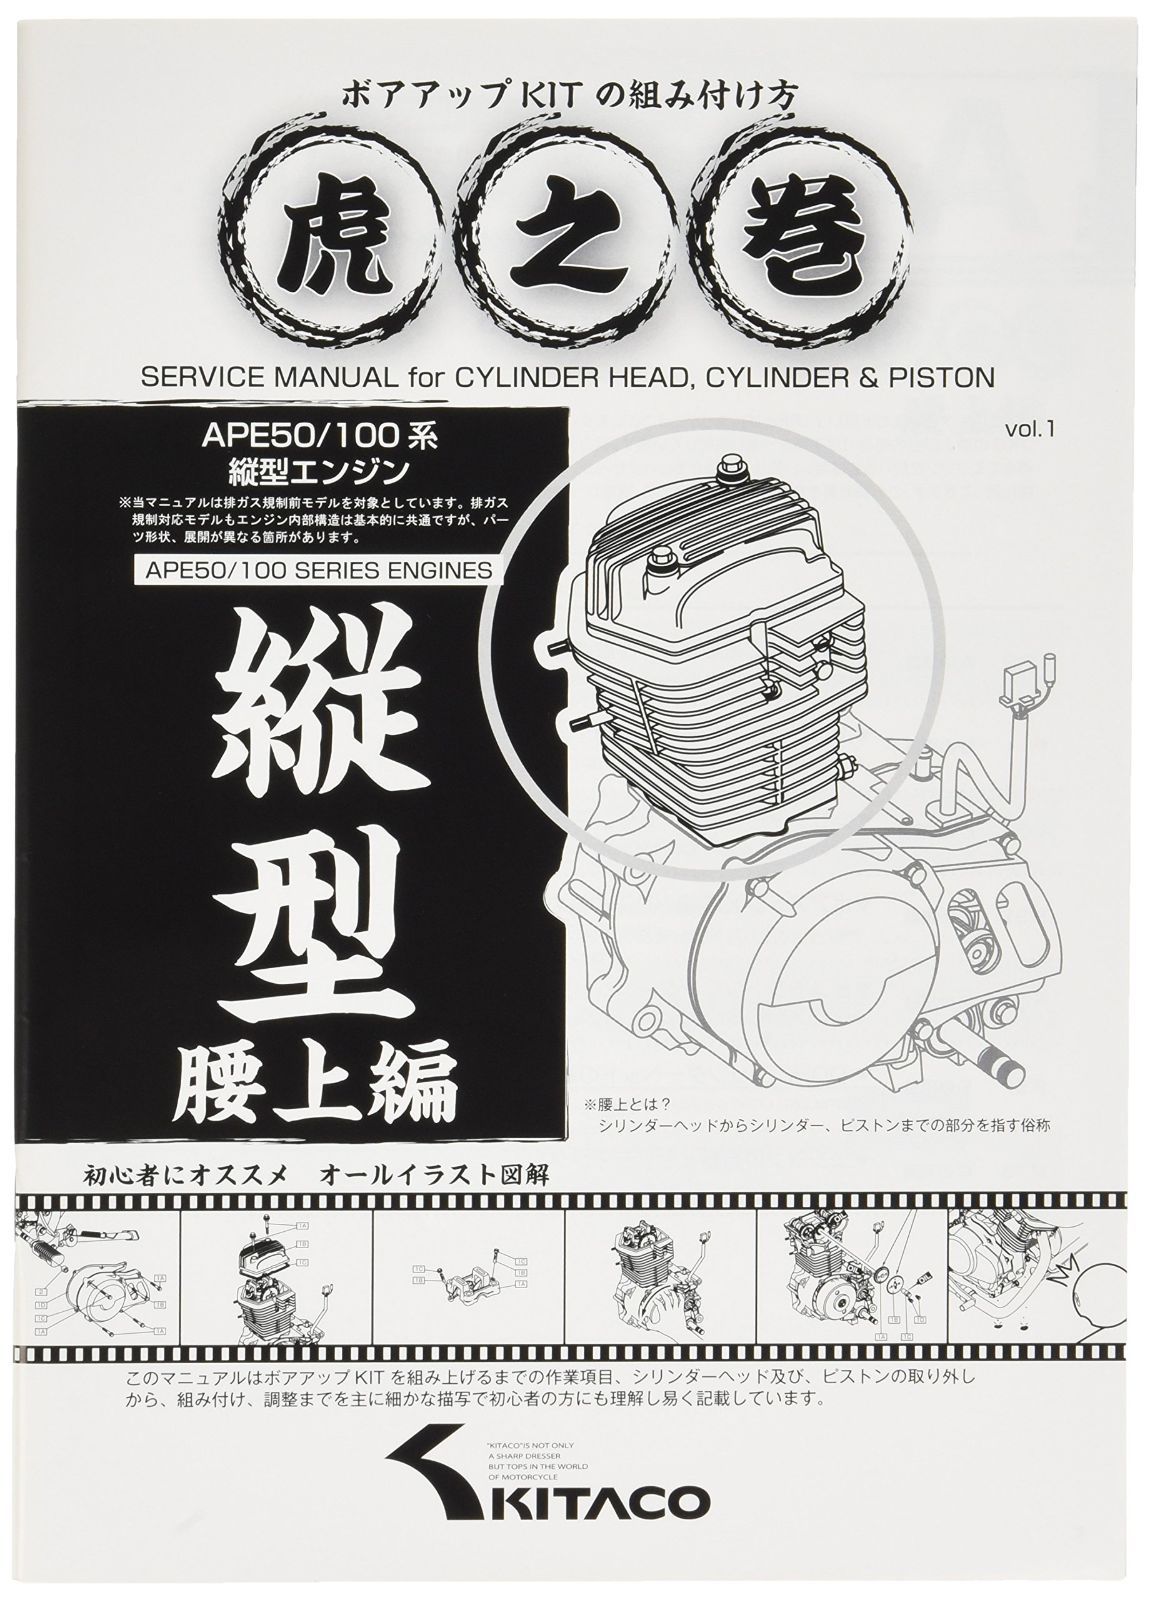 【人気商品】ボアアップキットの組み付け方 虎の巻 腰上編 キタコ(KITACO) エイプ系縦型エンジン 00-0901001